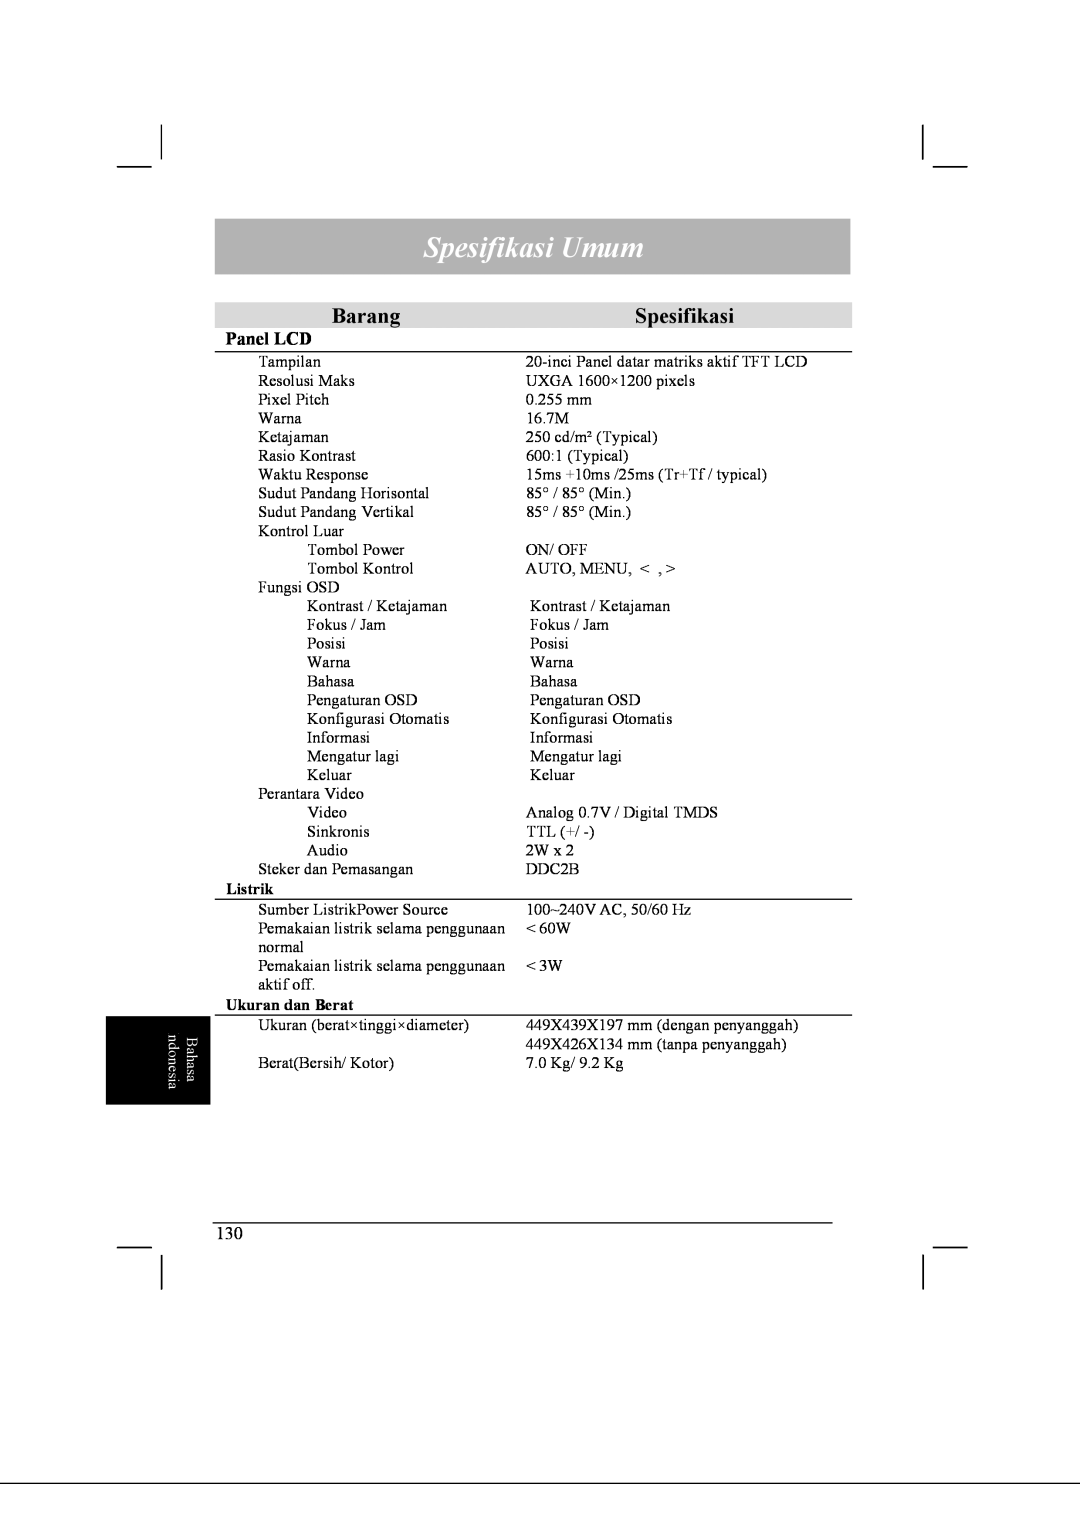 Acer AL2021 manual Spesifikasi Umum, Barang, Listrik, Ukuran dan Berat 